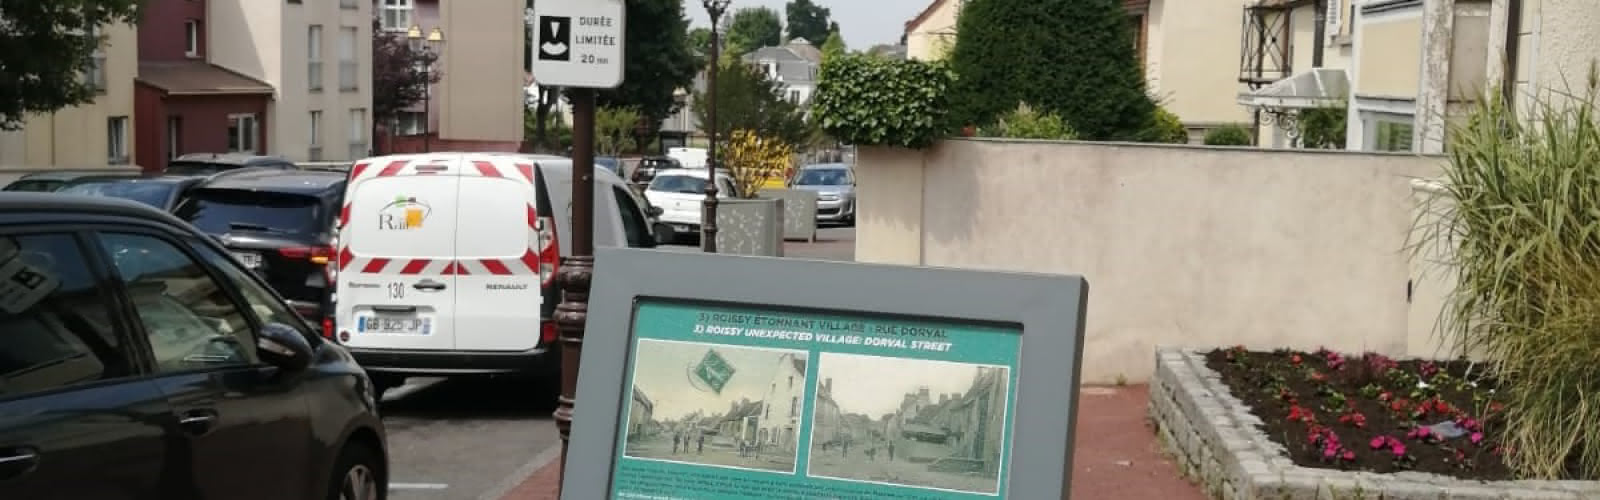 Parcours patrimonial connecté de Roissy-en-France